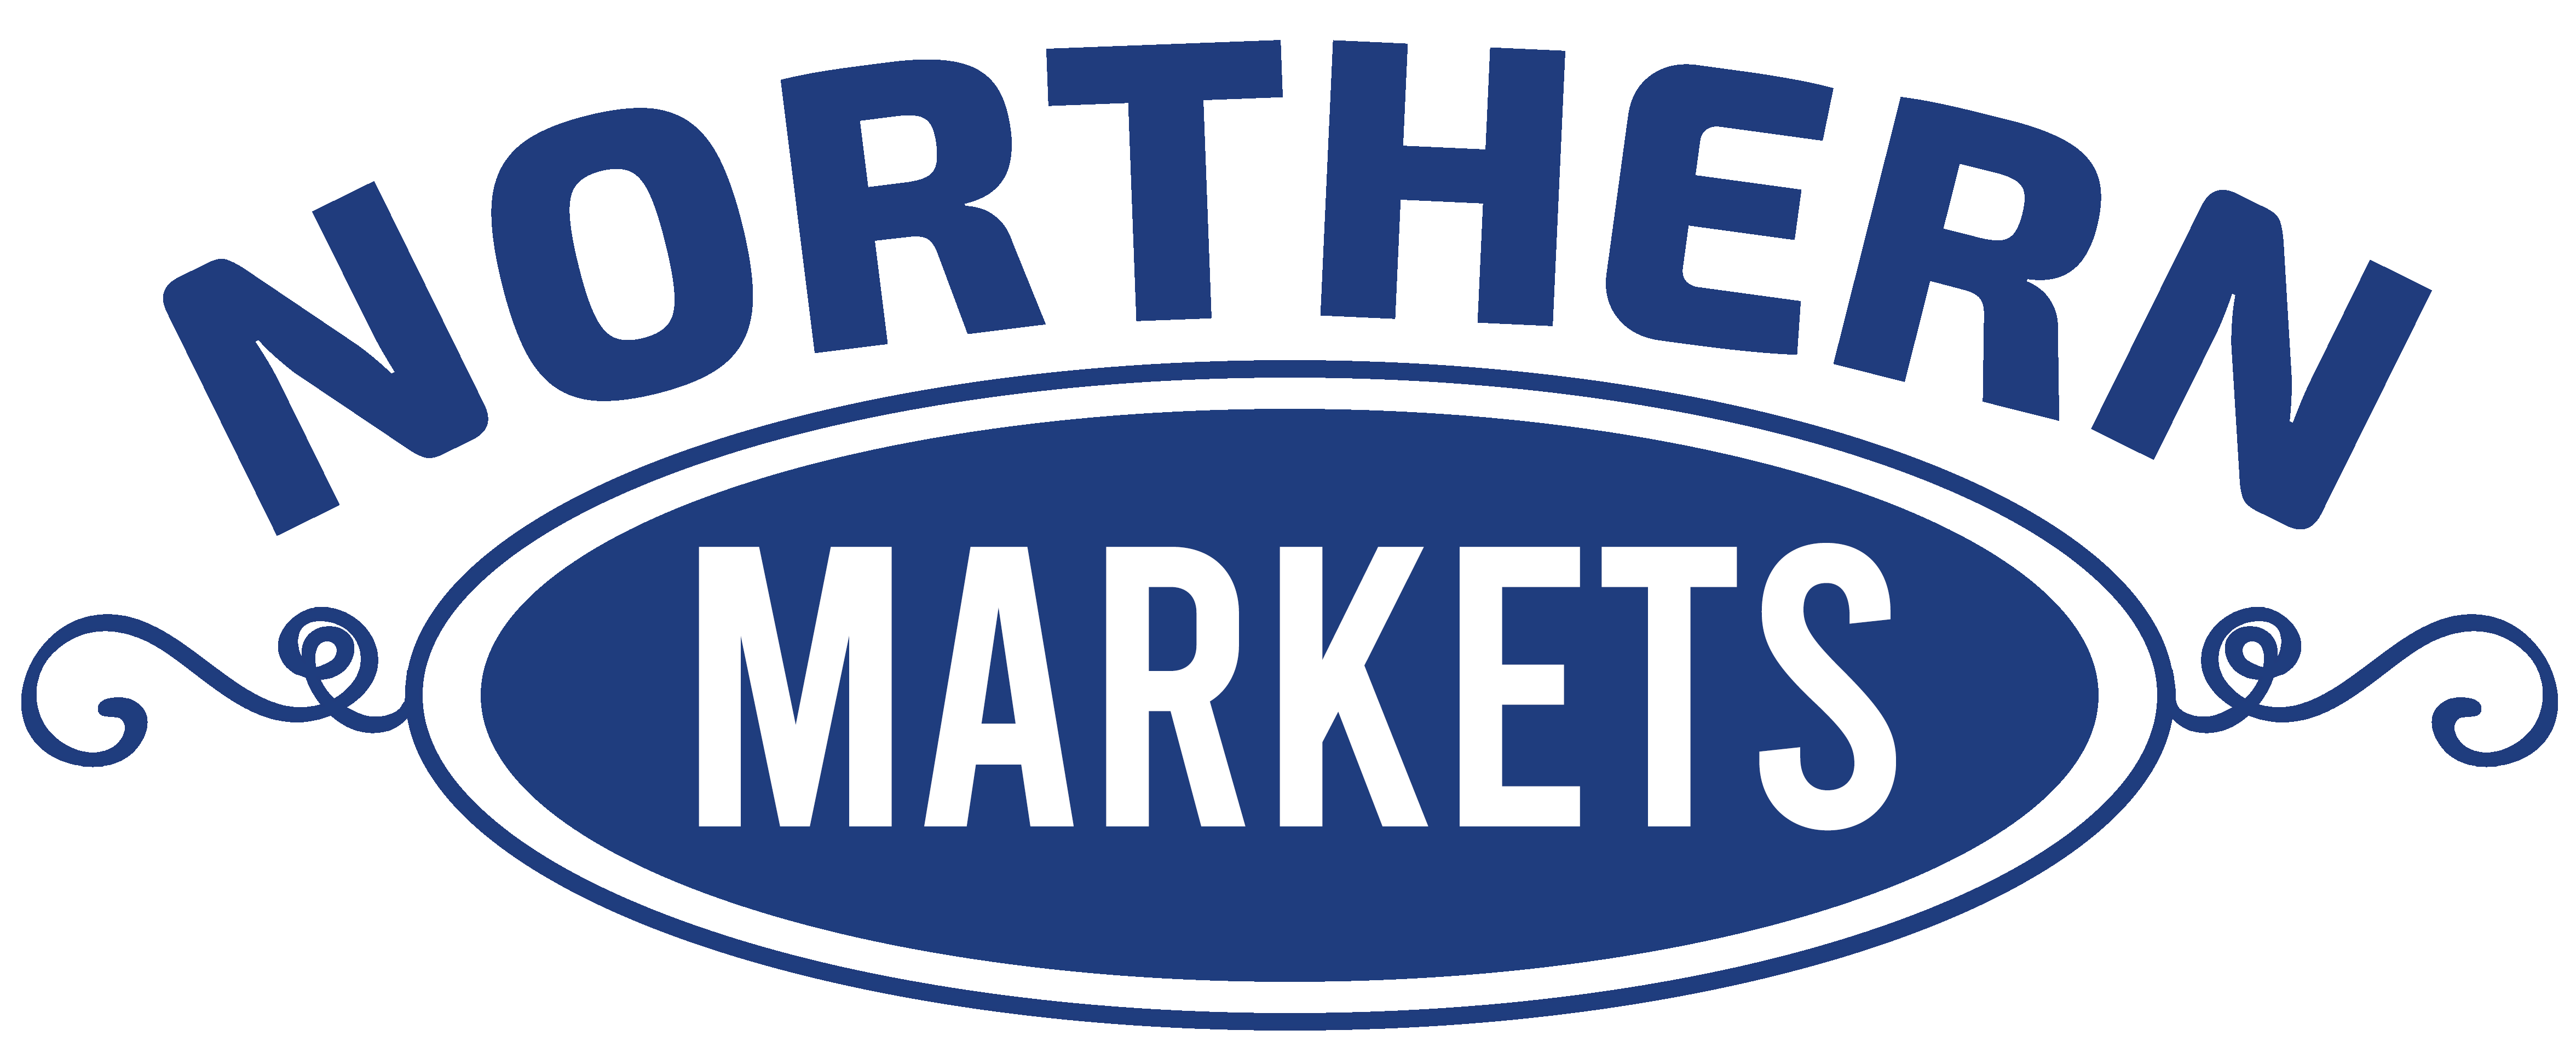 Northern Markets Logo